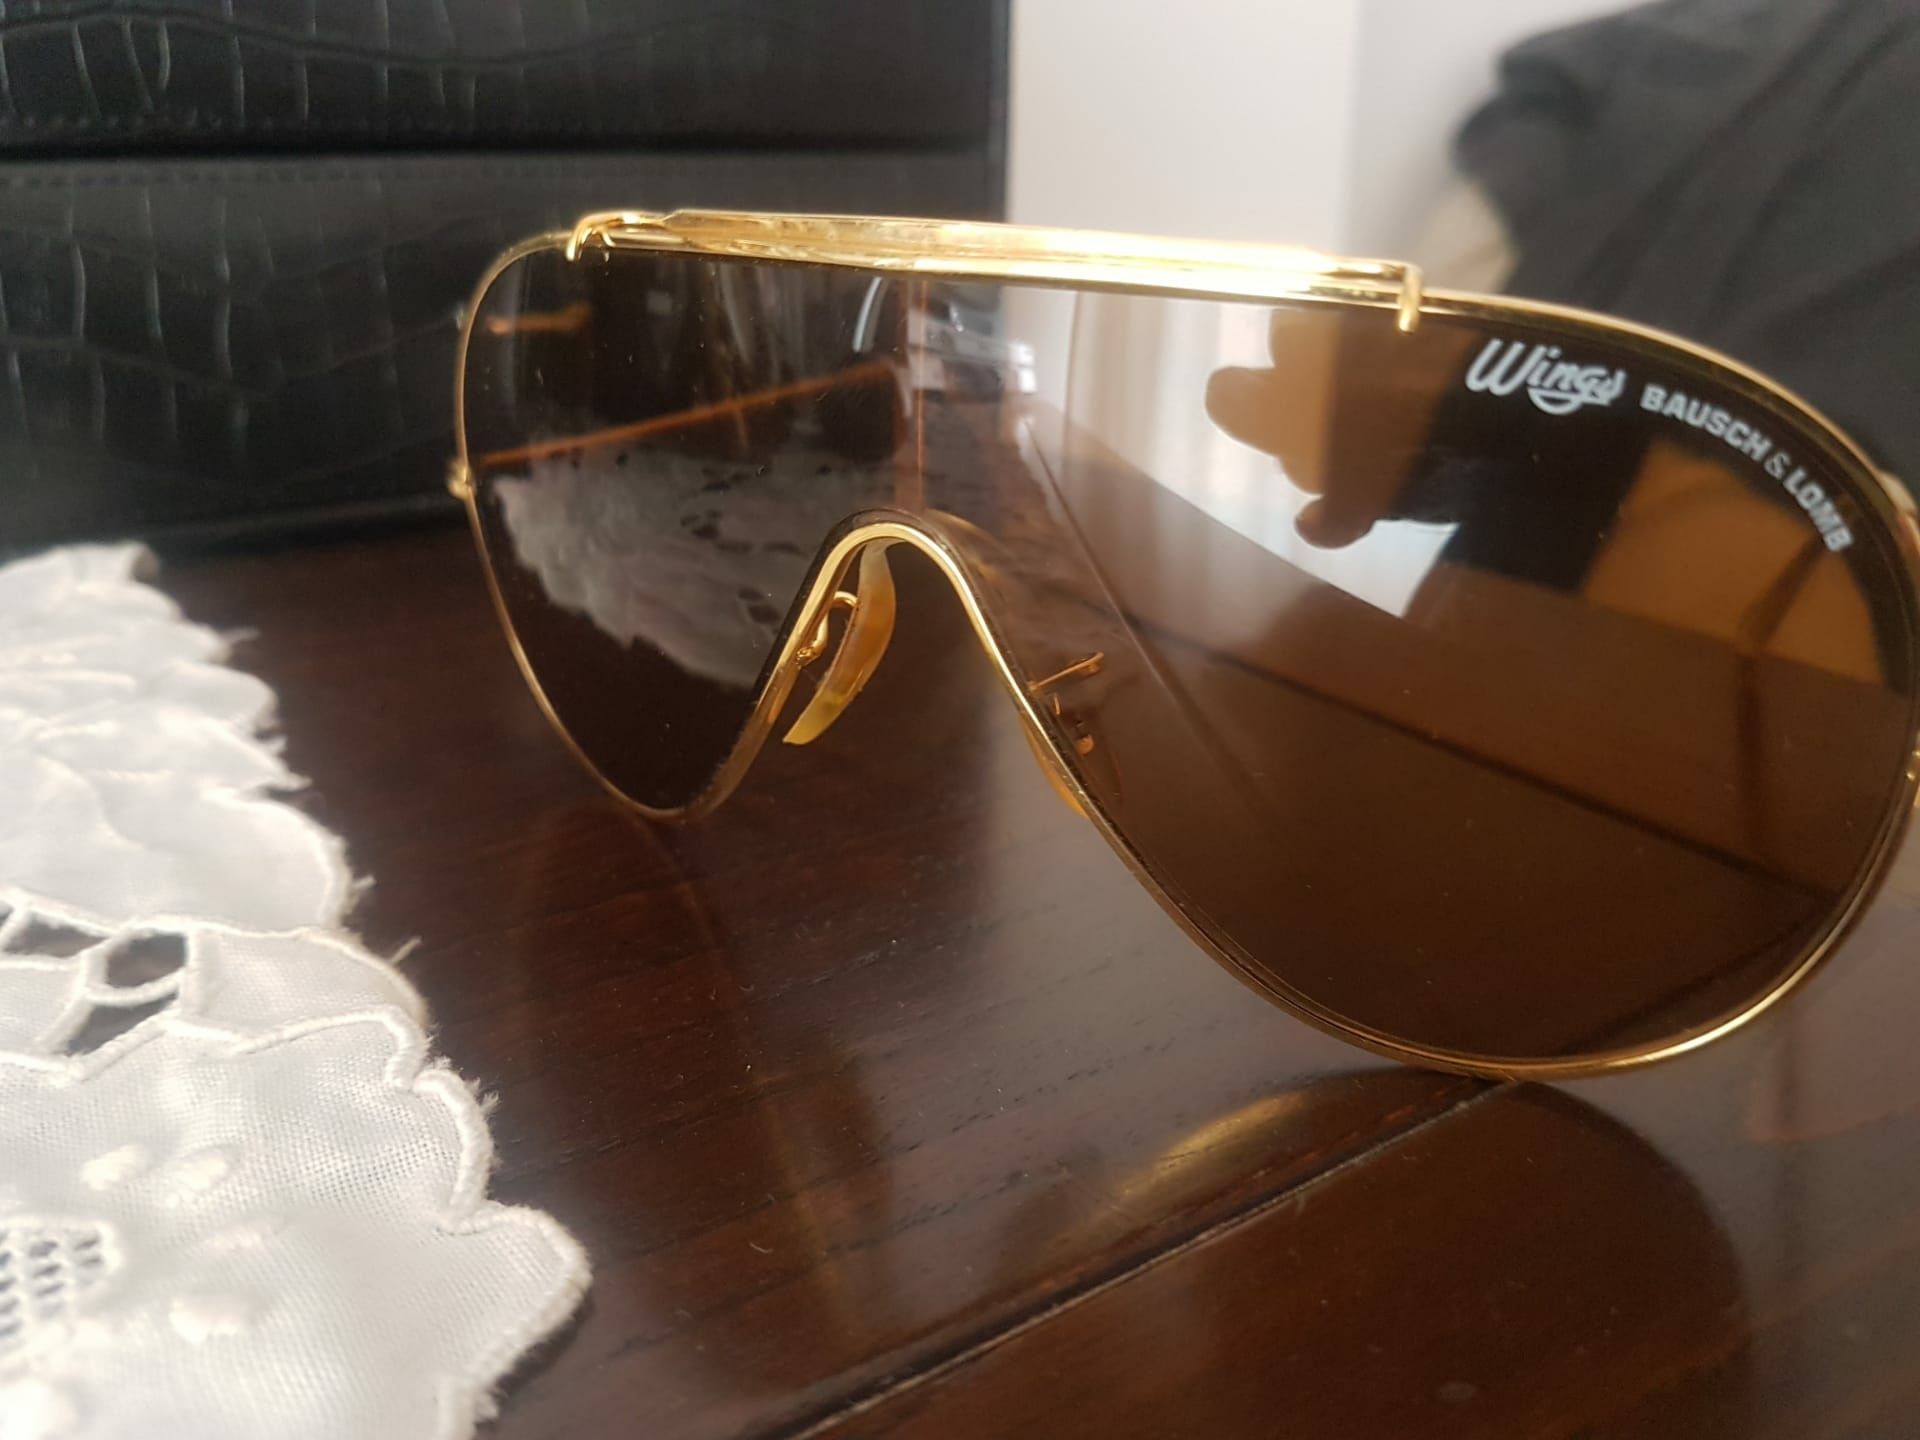 Oculos de sol  aviador Wings bausch & lomb vintage